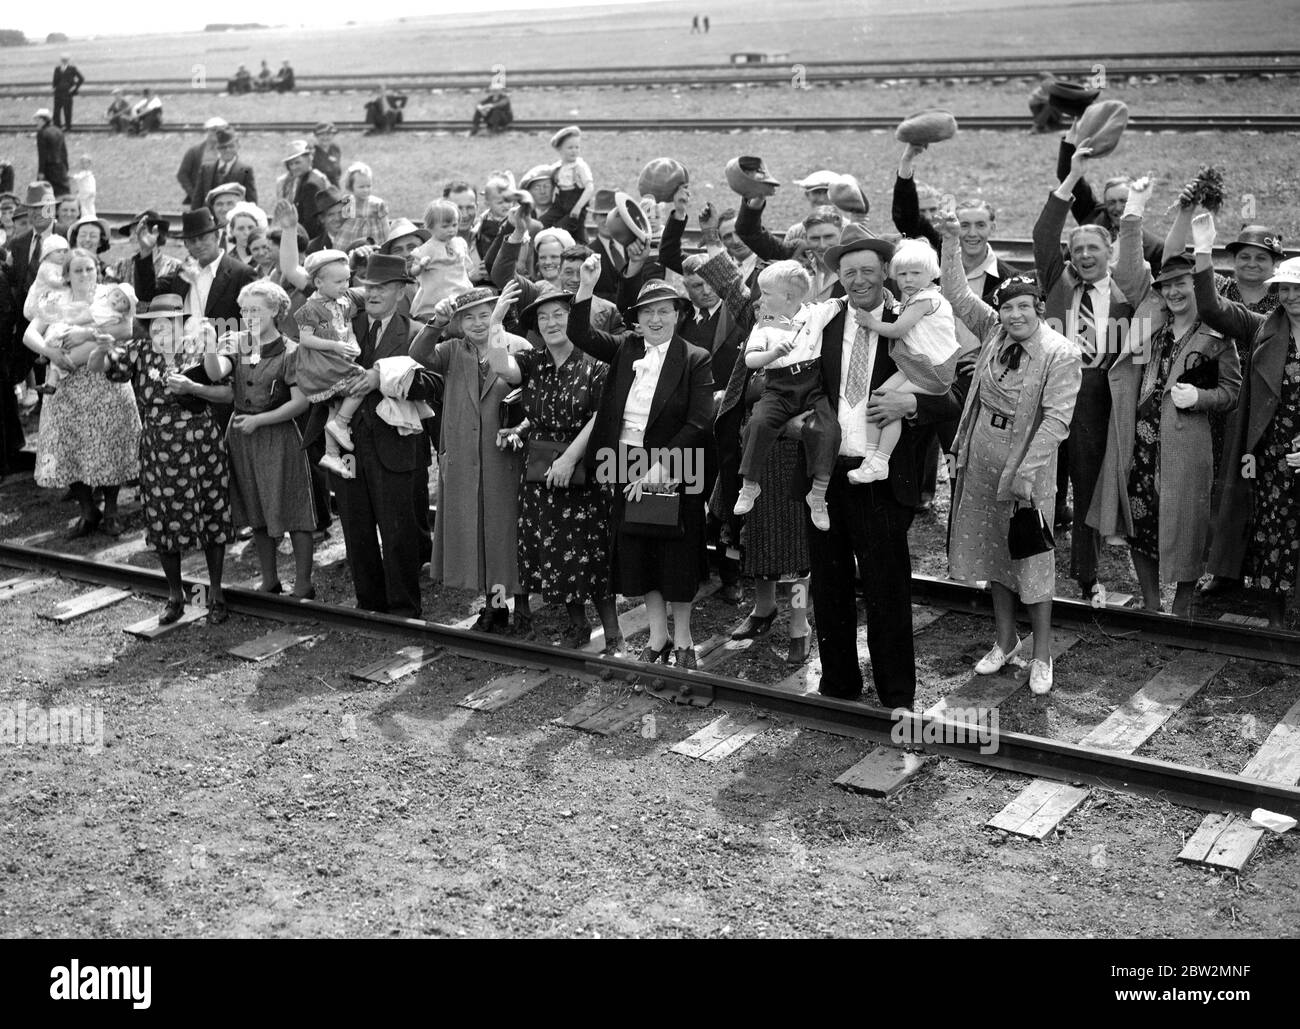 Le roi George VI et la reine Elizabeth lors de leur tournée royale des États-Unis et du Canada , 1939 UNE scène typique sur les voies ferrées, comme les agriculteurs et leurs familles , dont certains avaient parcouru des kilomètres , ont acclamé le roi et la reine lorsqu'ils passaient dans les Prairies du Canada. Banque D'Images